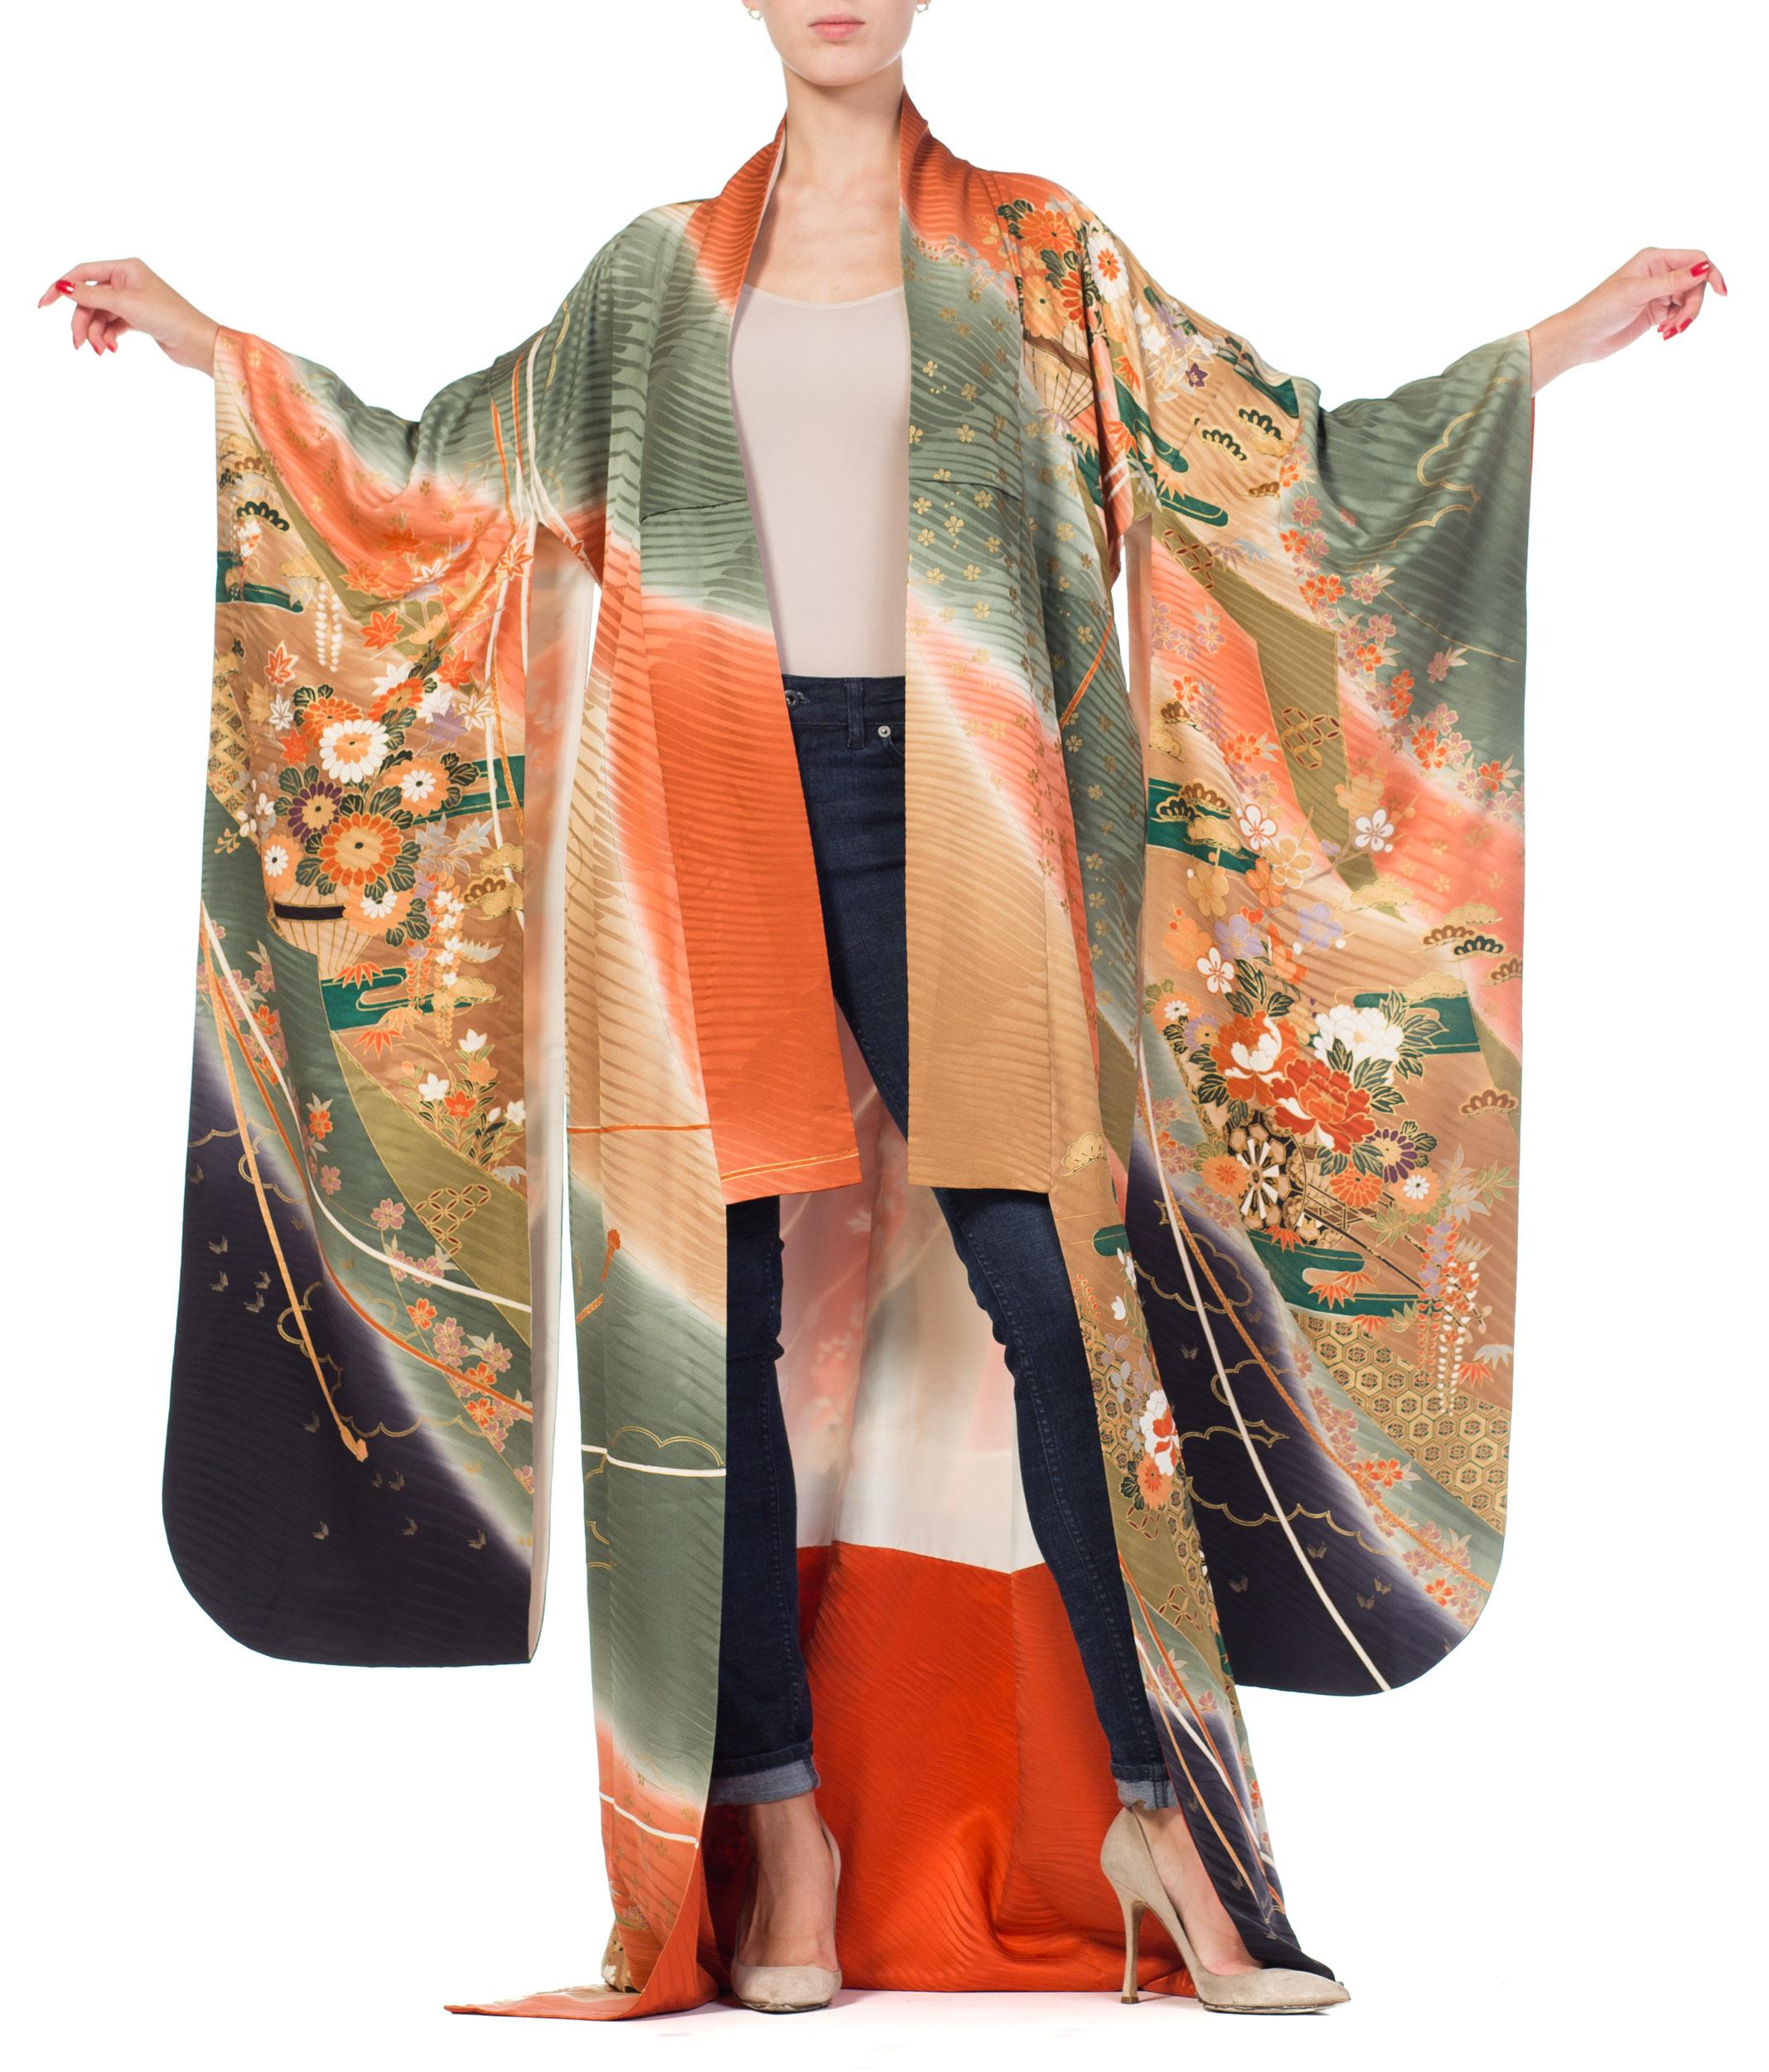 kimono details